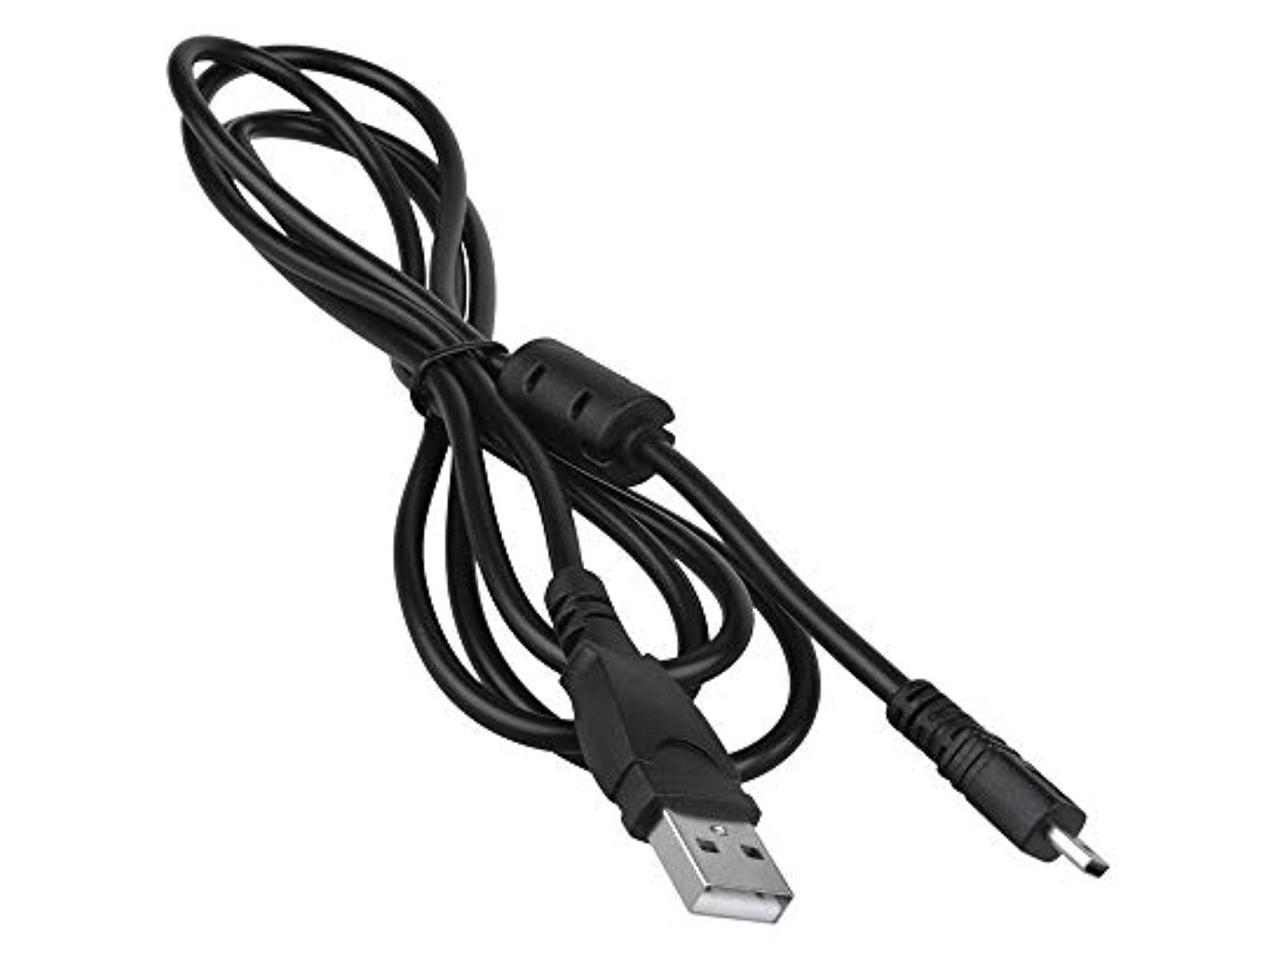 Gigabyte Fox® Chargeur et câble de chargement W800 DSC-F828 DSC-W830 DSC-F828 câble USB pour Sony Cyber-shot DSC-H400 TF1-DSC-W810 W710 dsc-w730 câble de données 